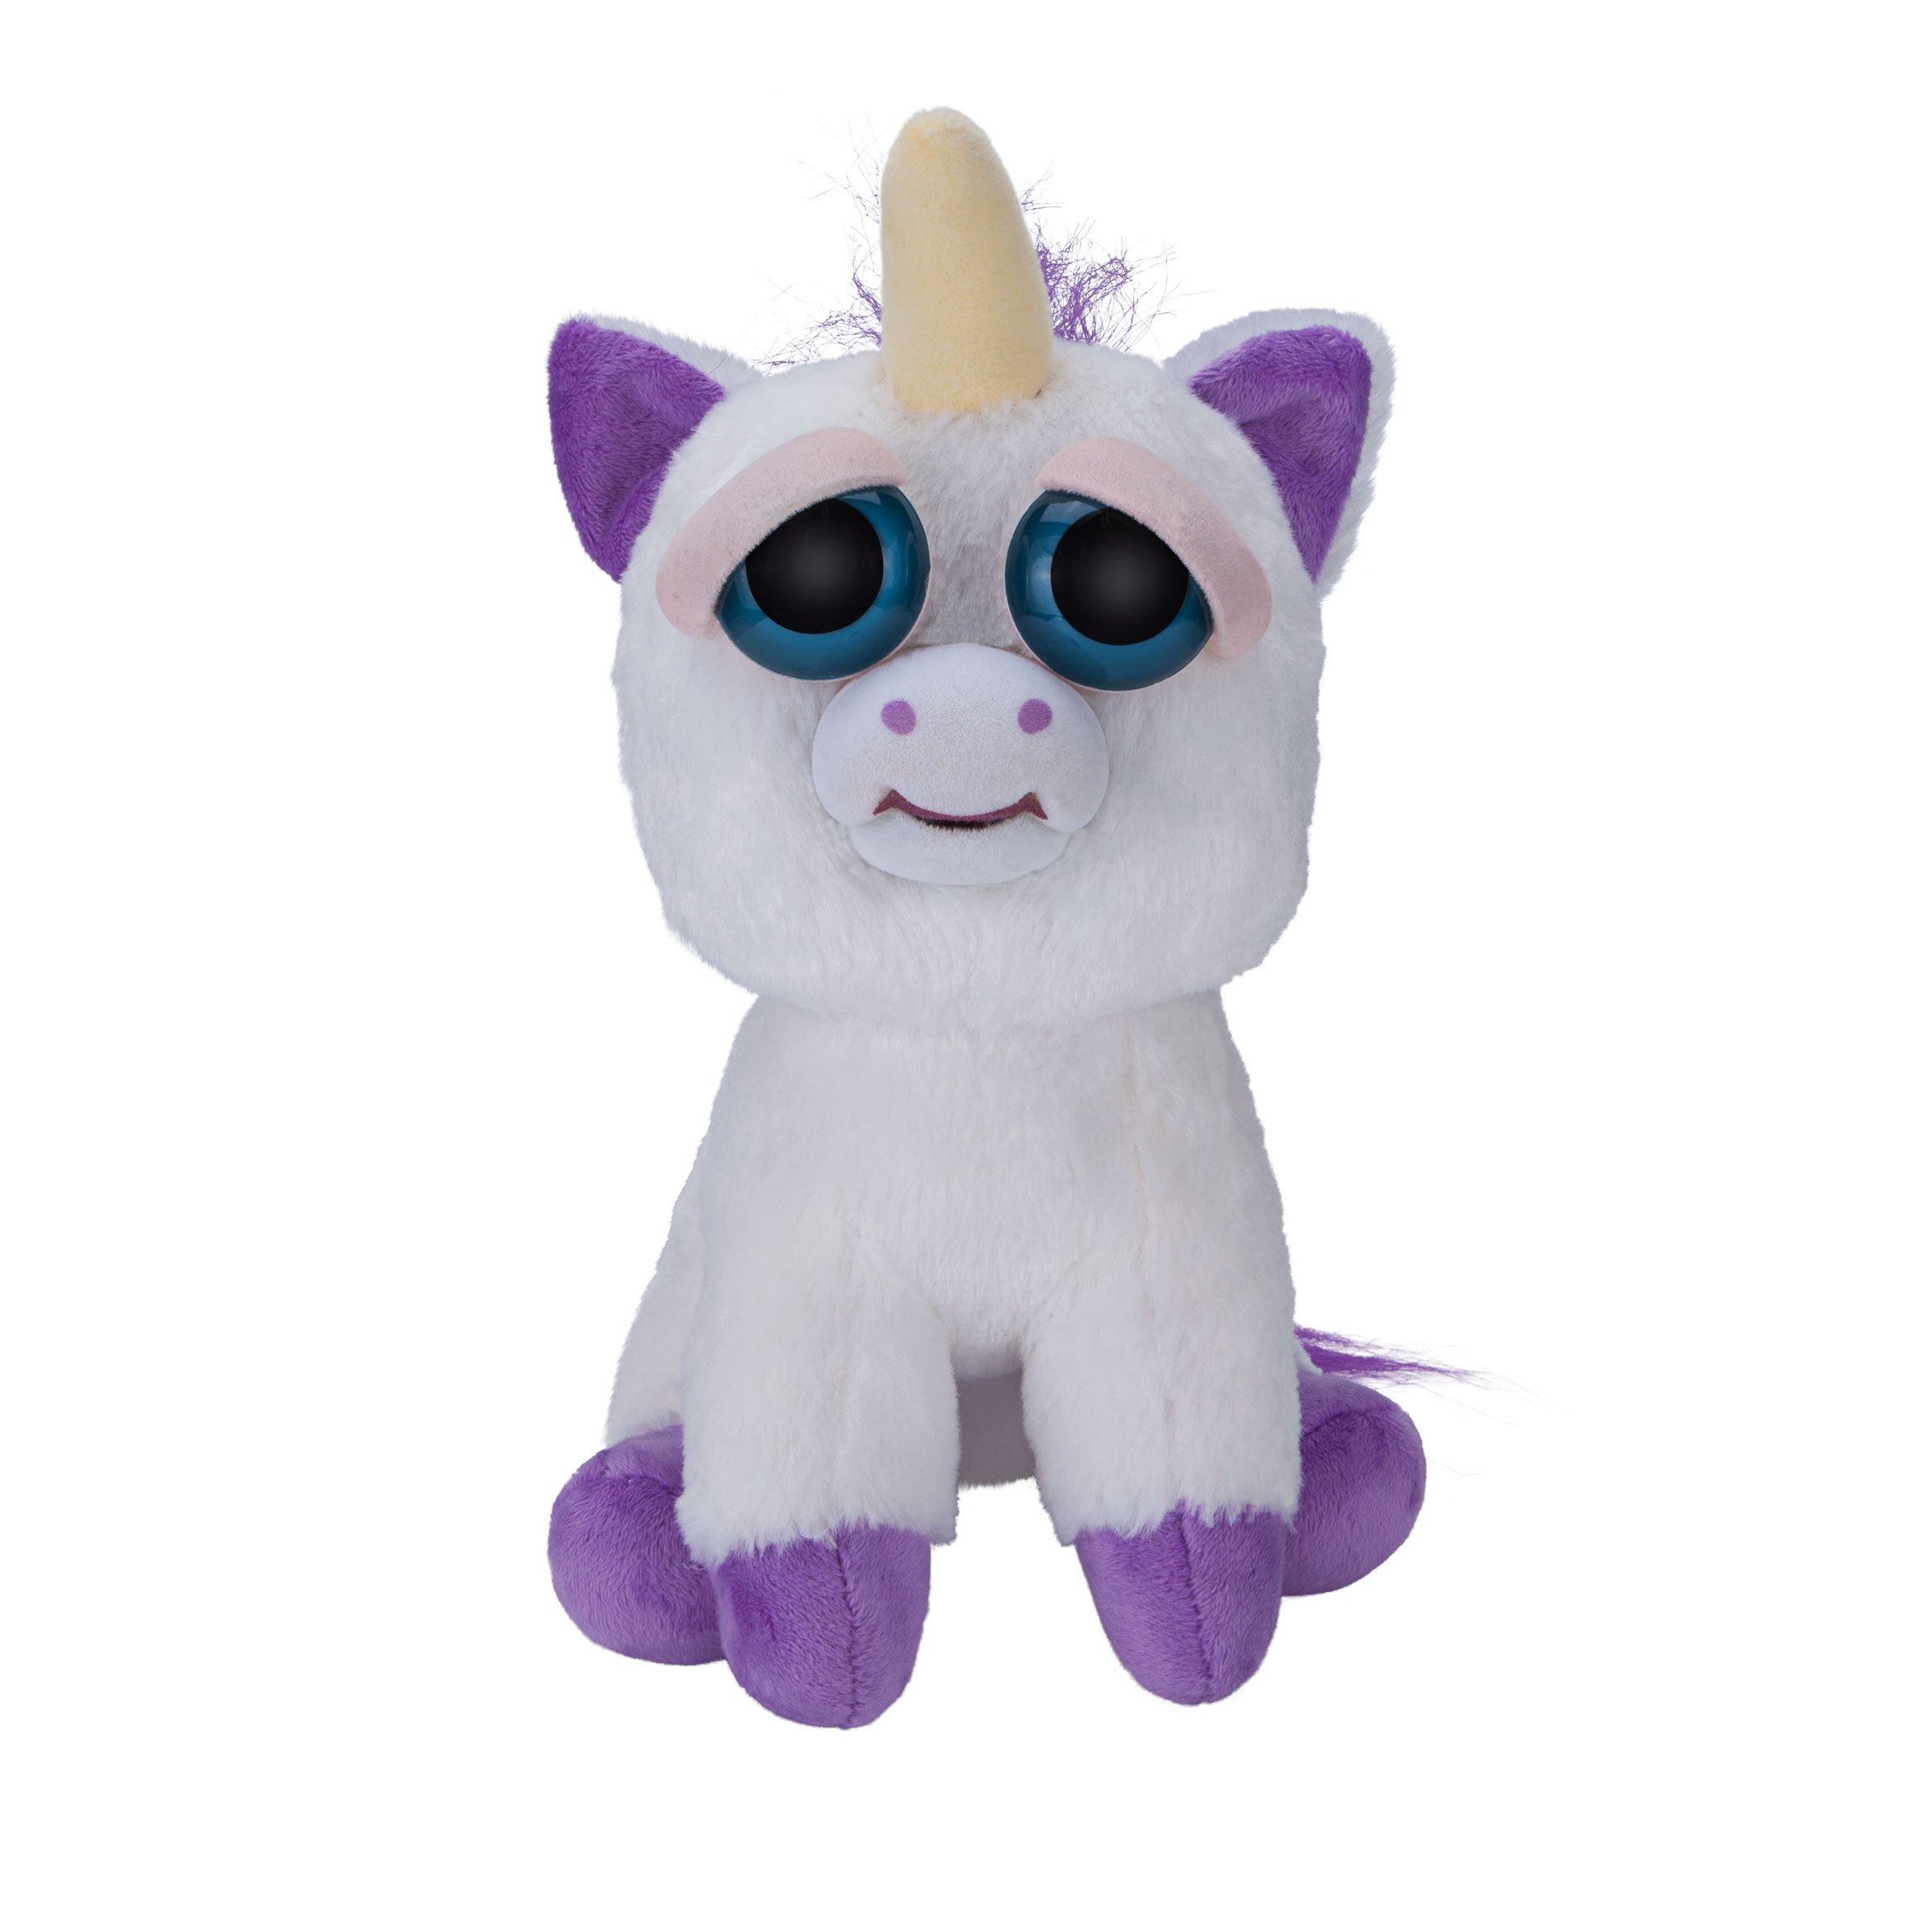 Feisty Pets Fiesty Pets Unicorn Glenda Glitterpoop Unicorn Plush Toys Gifts 7>5 